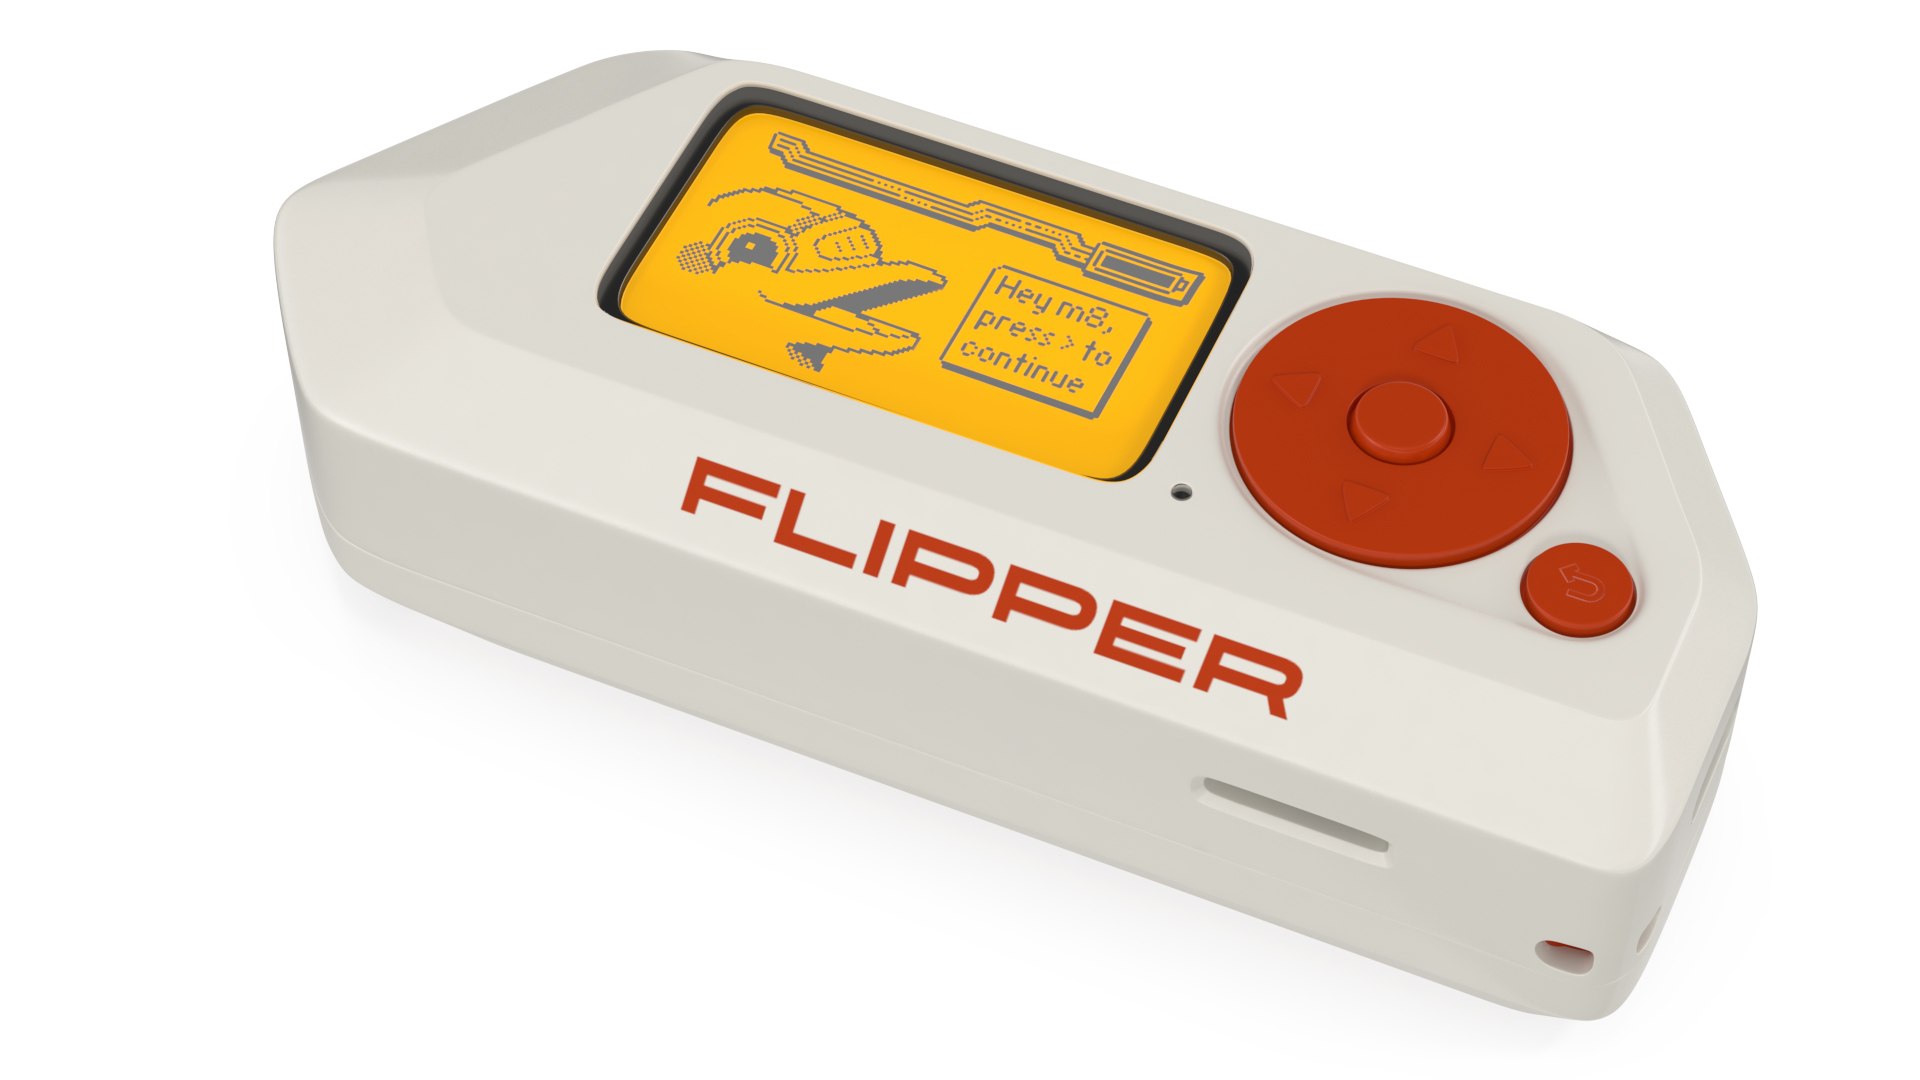 Flipper Zero — Multitool for Hackers by Flipper Devices Inc. — Kickstarter